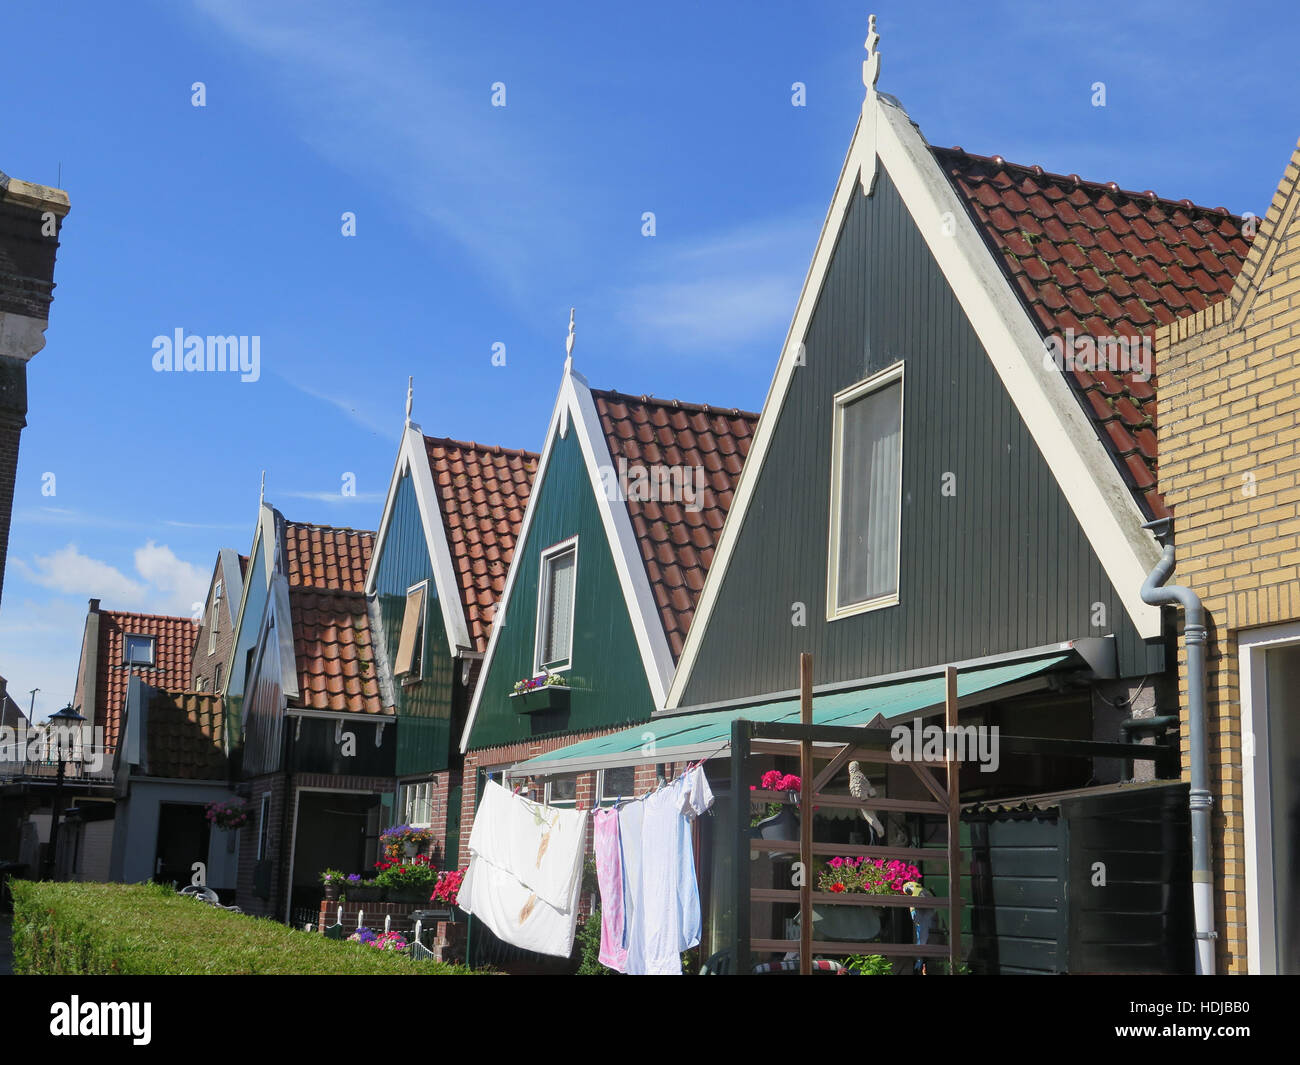 Typisches Haus von dem Fischerdorf Urk, Flevoland, Niederlande Stockfoto